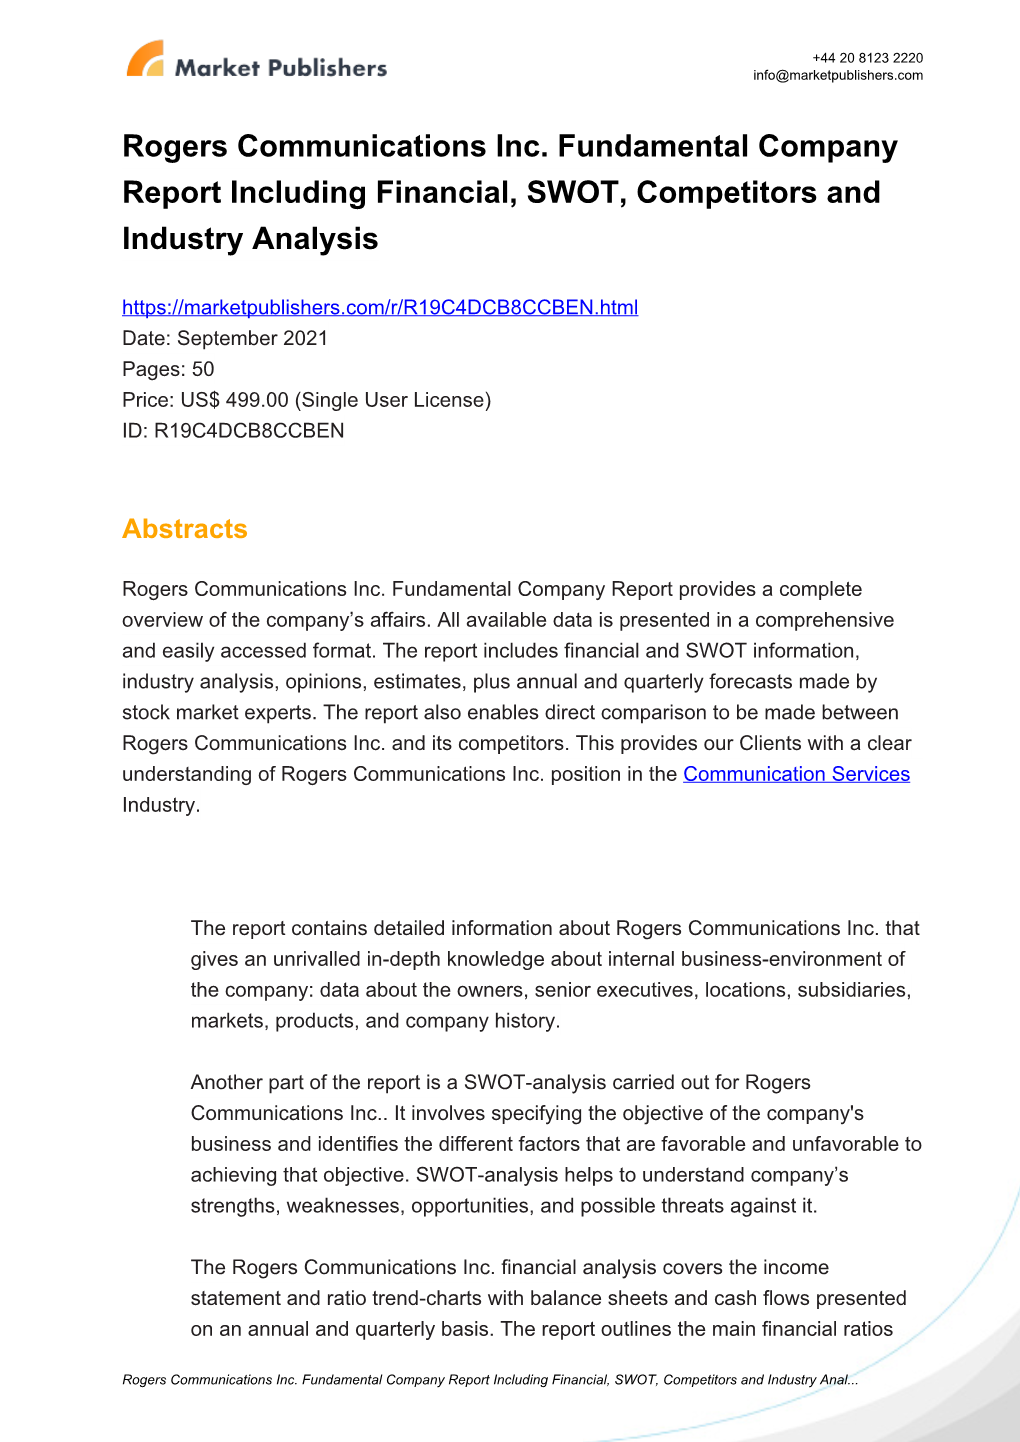 Rogers Communications Inc. Fundamental Company Report